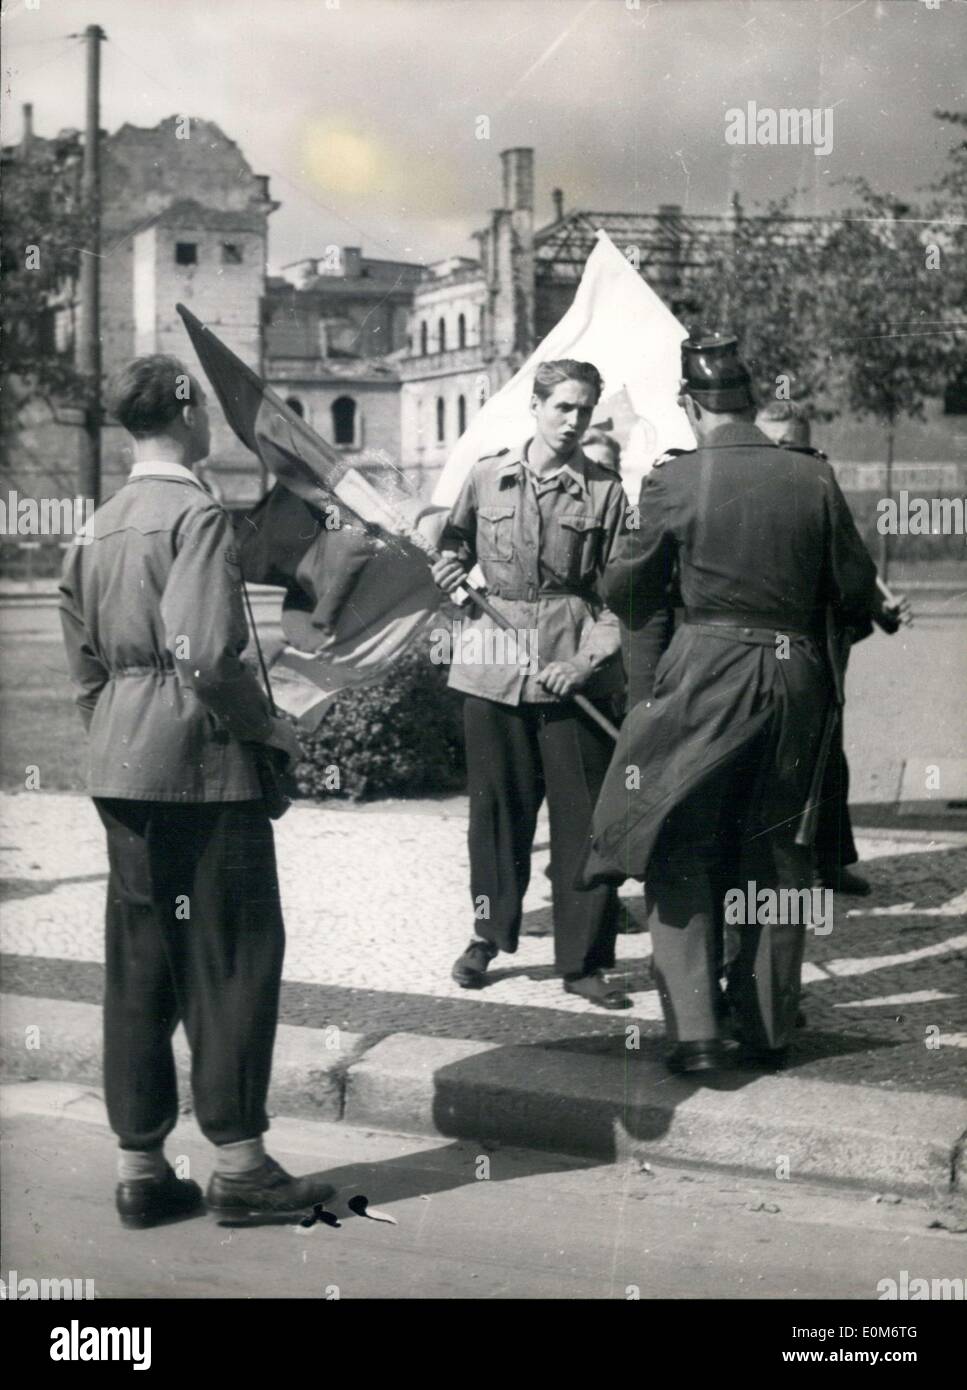 Sett. 15, 1953 - Membri della FDJ, la Freie Deutsche Junge, un gruppo comunista in Germania Est, sono stati incitati ad attraversare la zona di confine presso la Porta di Brandeburgo e mettere le bandiere della Germania orientale e una bandiera della pace. A Berlino Ovest funzionario di polizia è raffigurato qui cercando di convincere i giovani FDJers a prendere le loro bandiere verso il basso. Dopo un distacco di polizia arrivati fuggirono indietro nella zona sovietica. Foto Stock